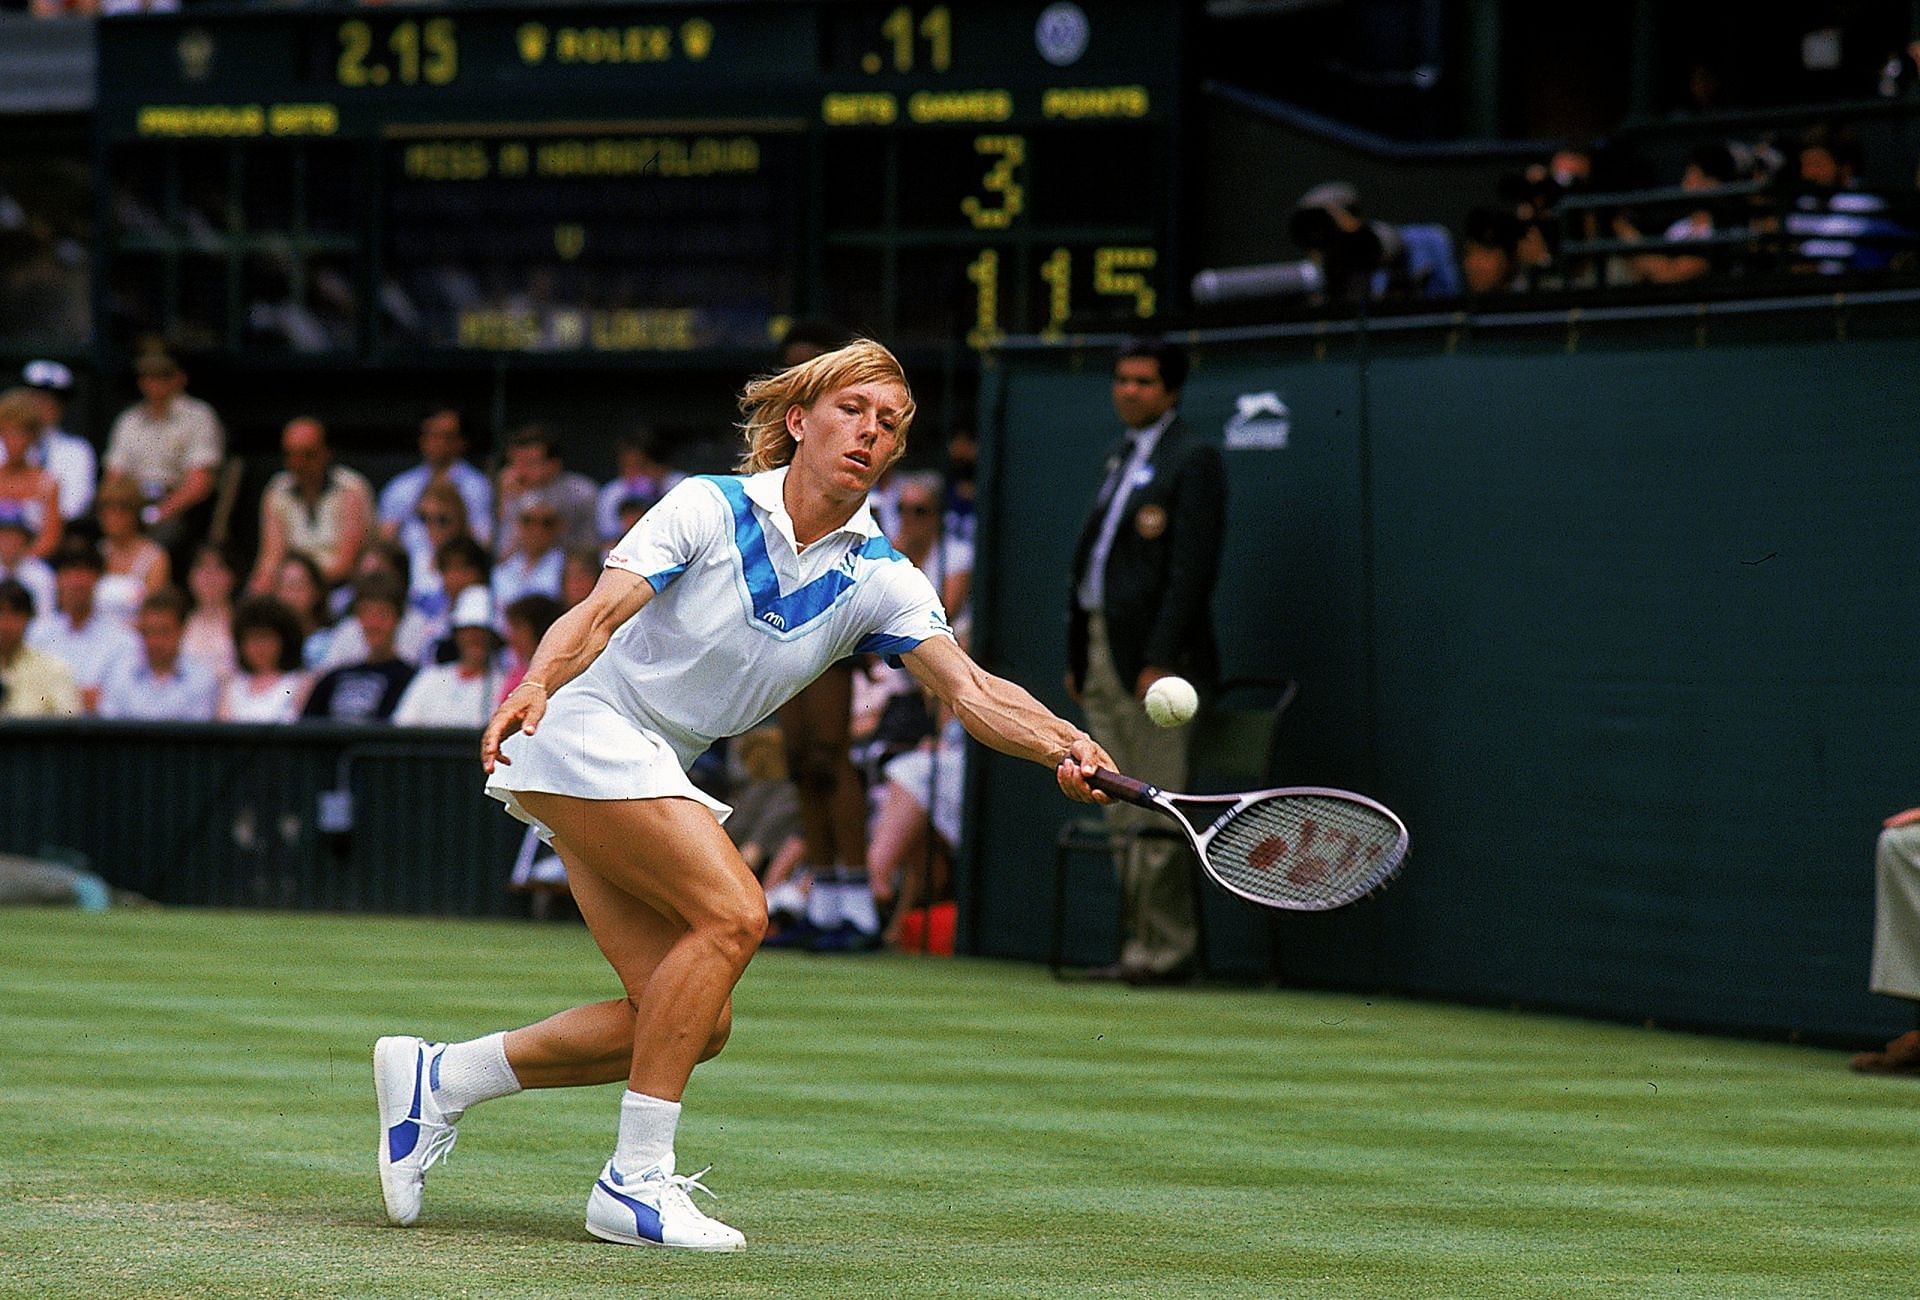 Martina Navratilova at Wimbledon